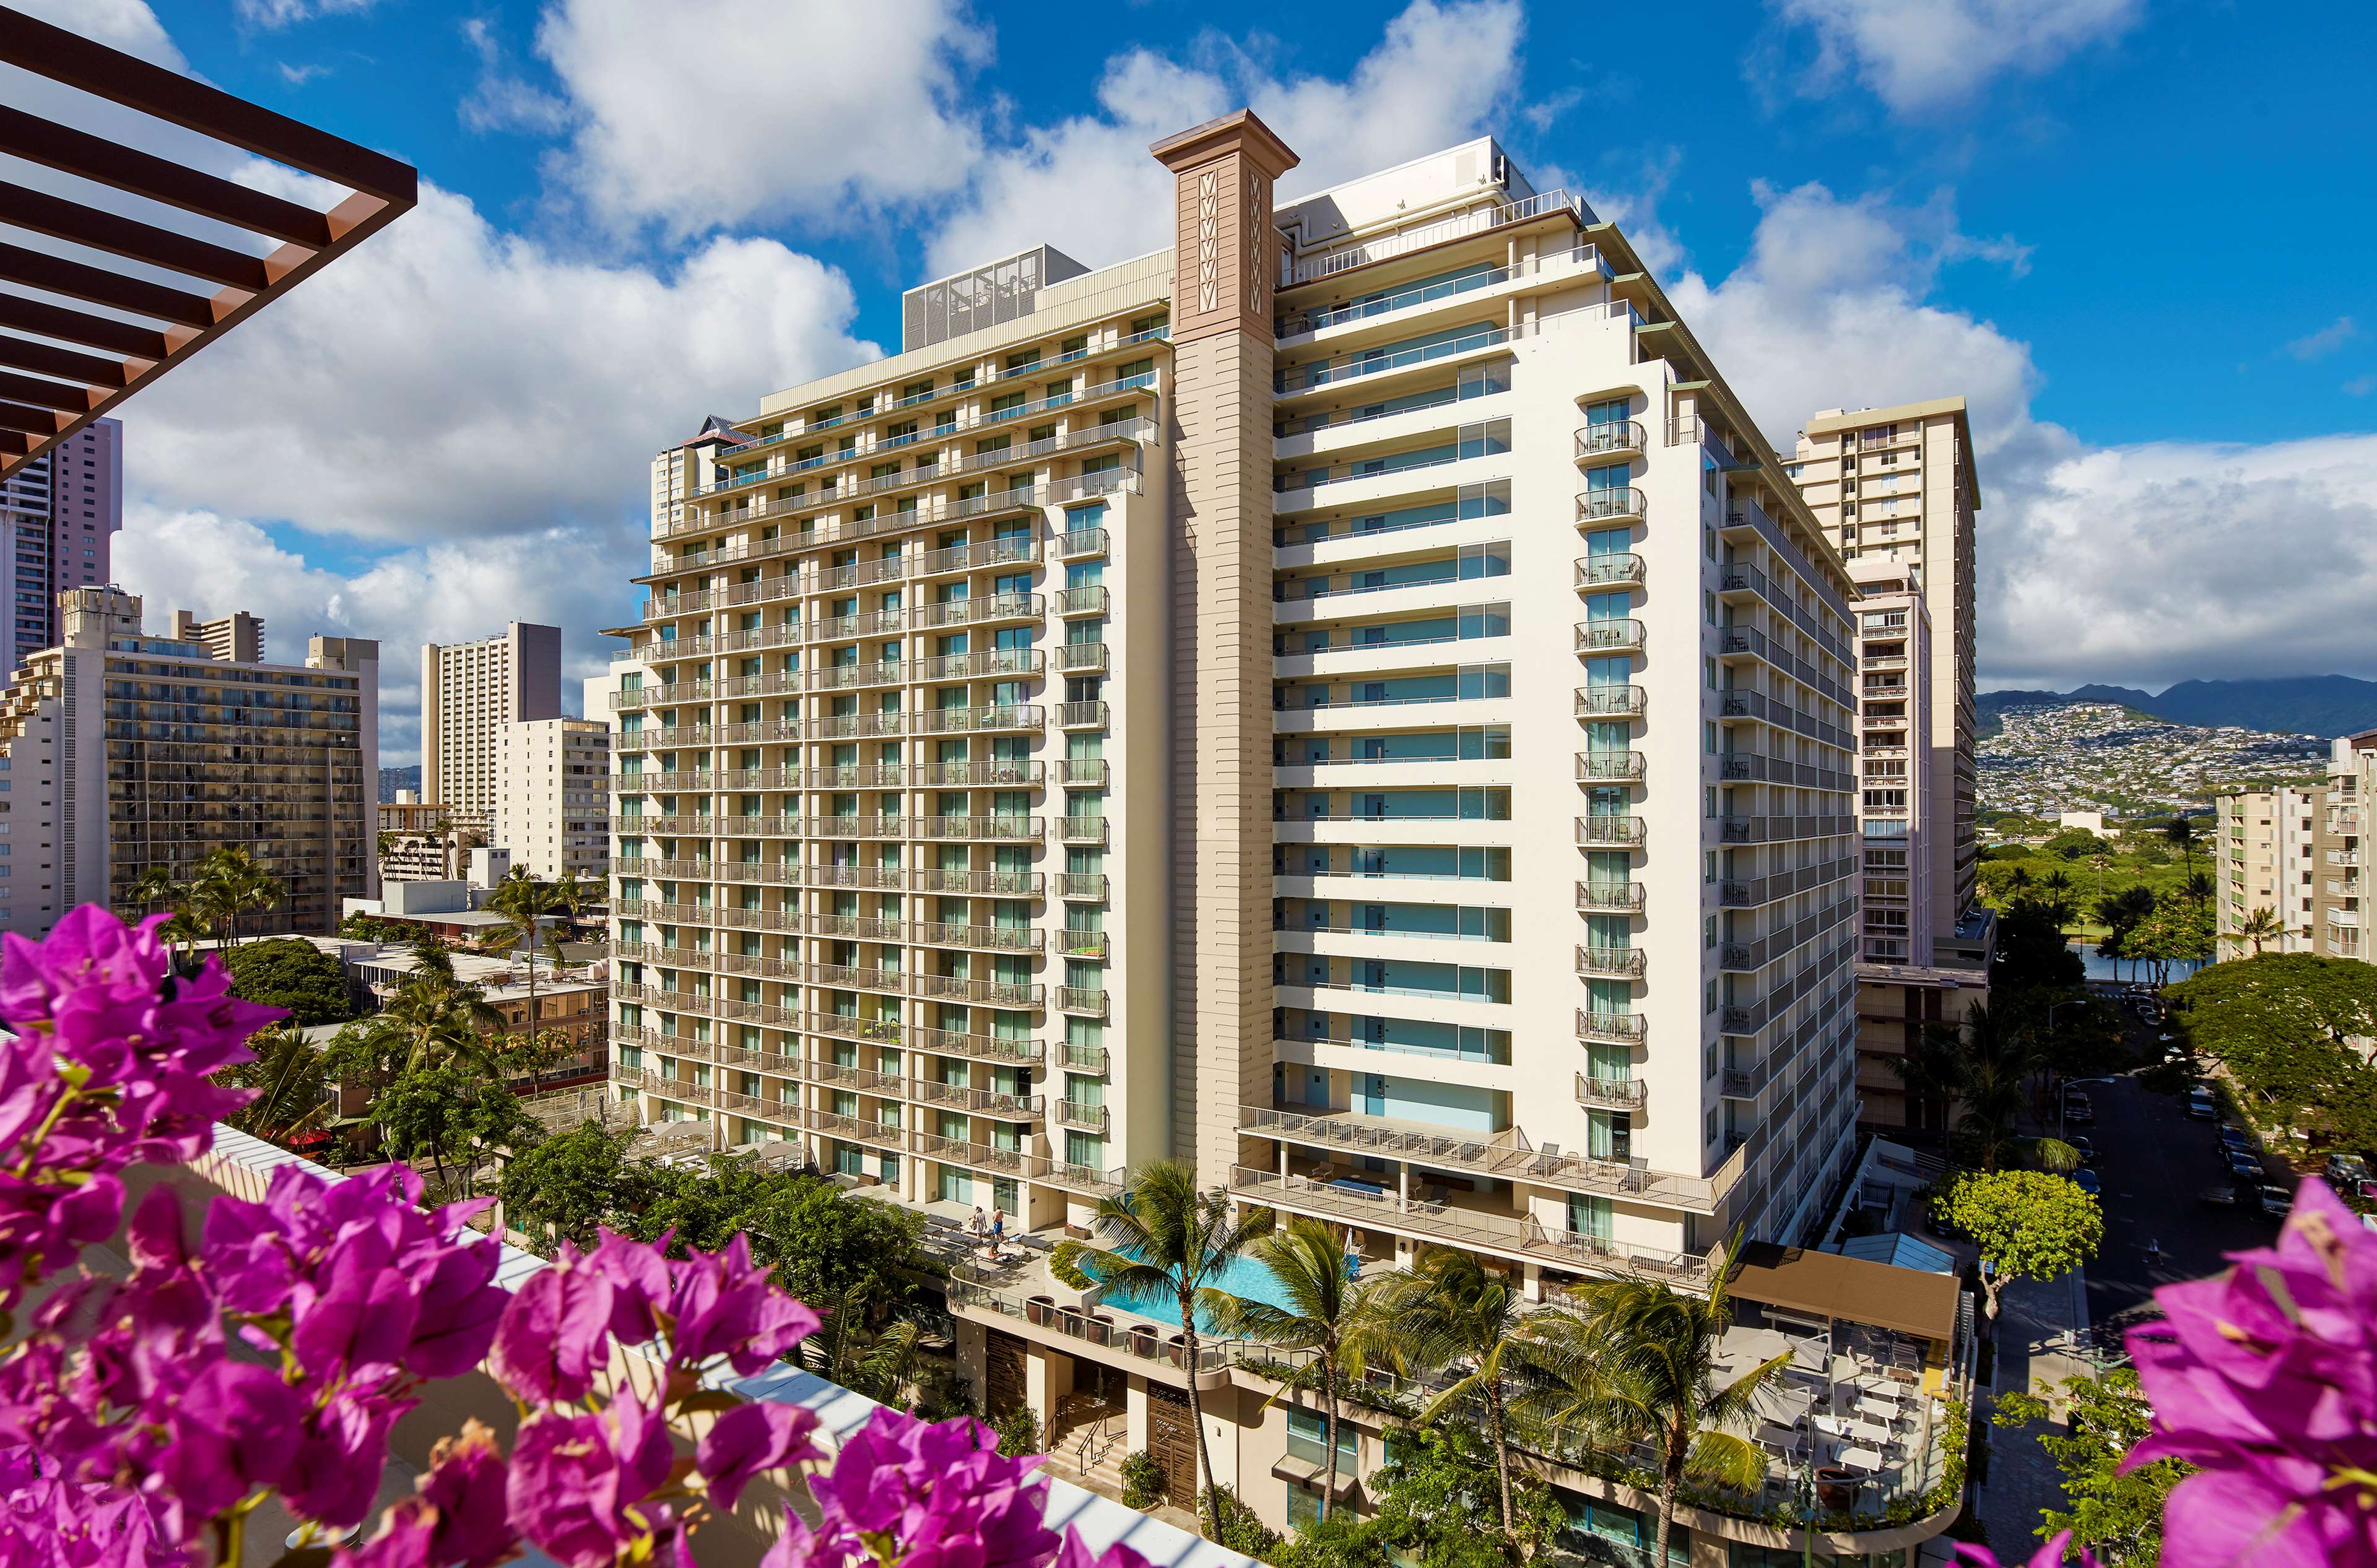 Hilton Garden Inn Waikiki Beach Photo